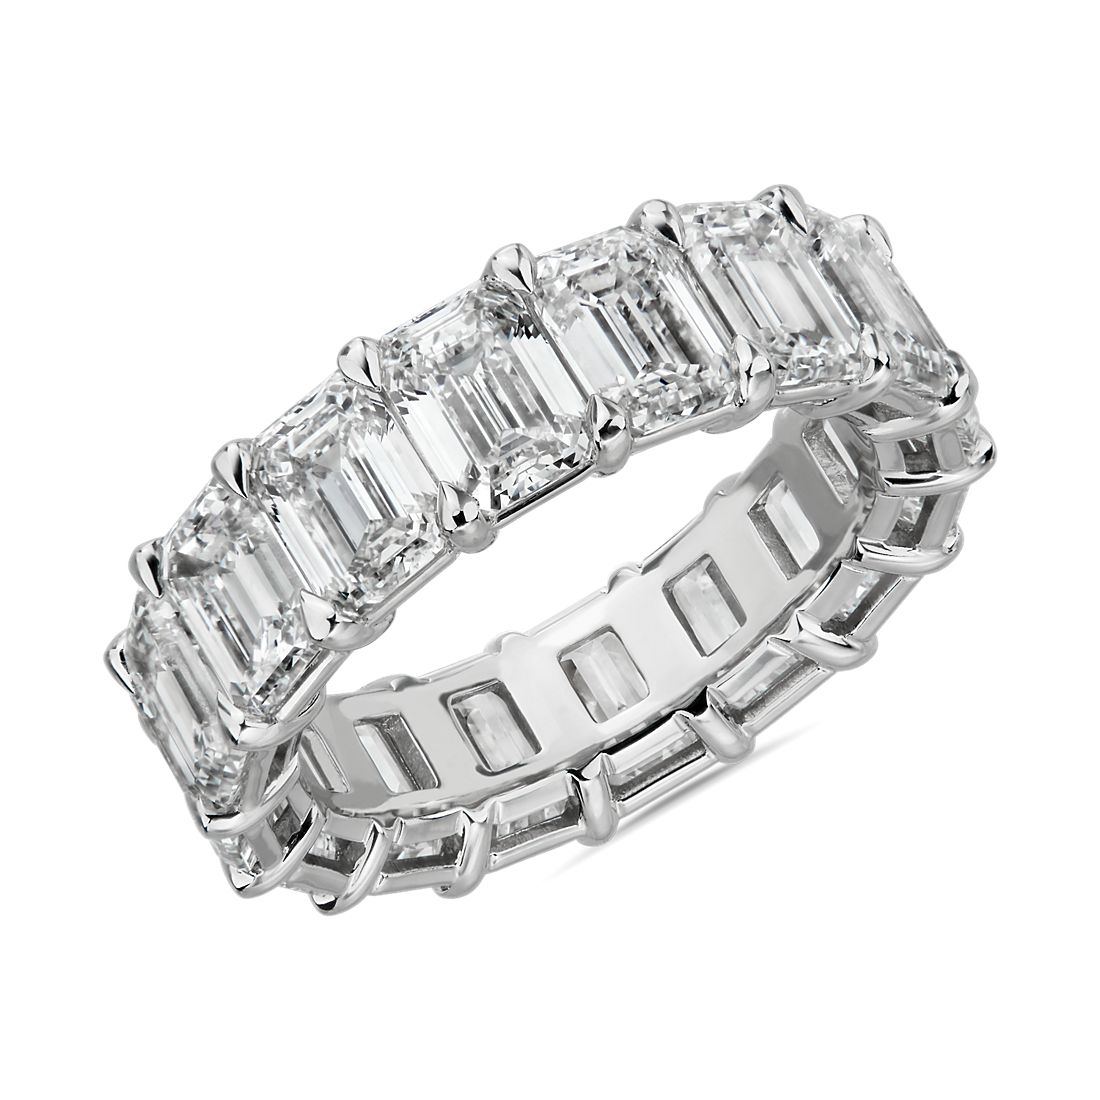 Emerald Cut Diamond Eternity Ring in Platinum (9 1/2 ct. tw.)